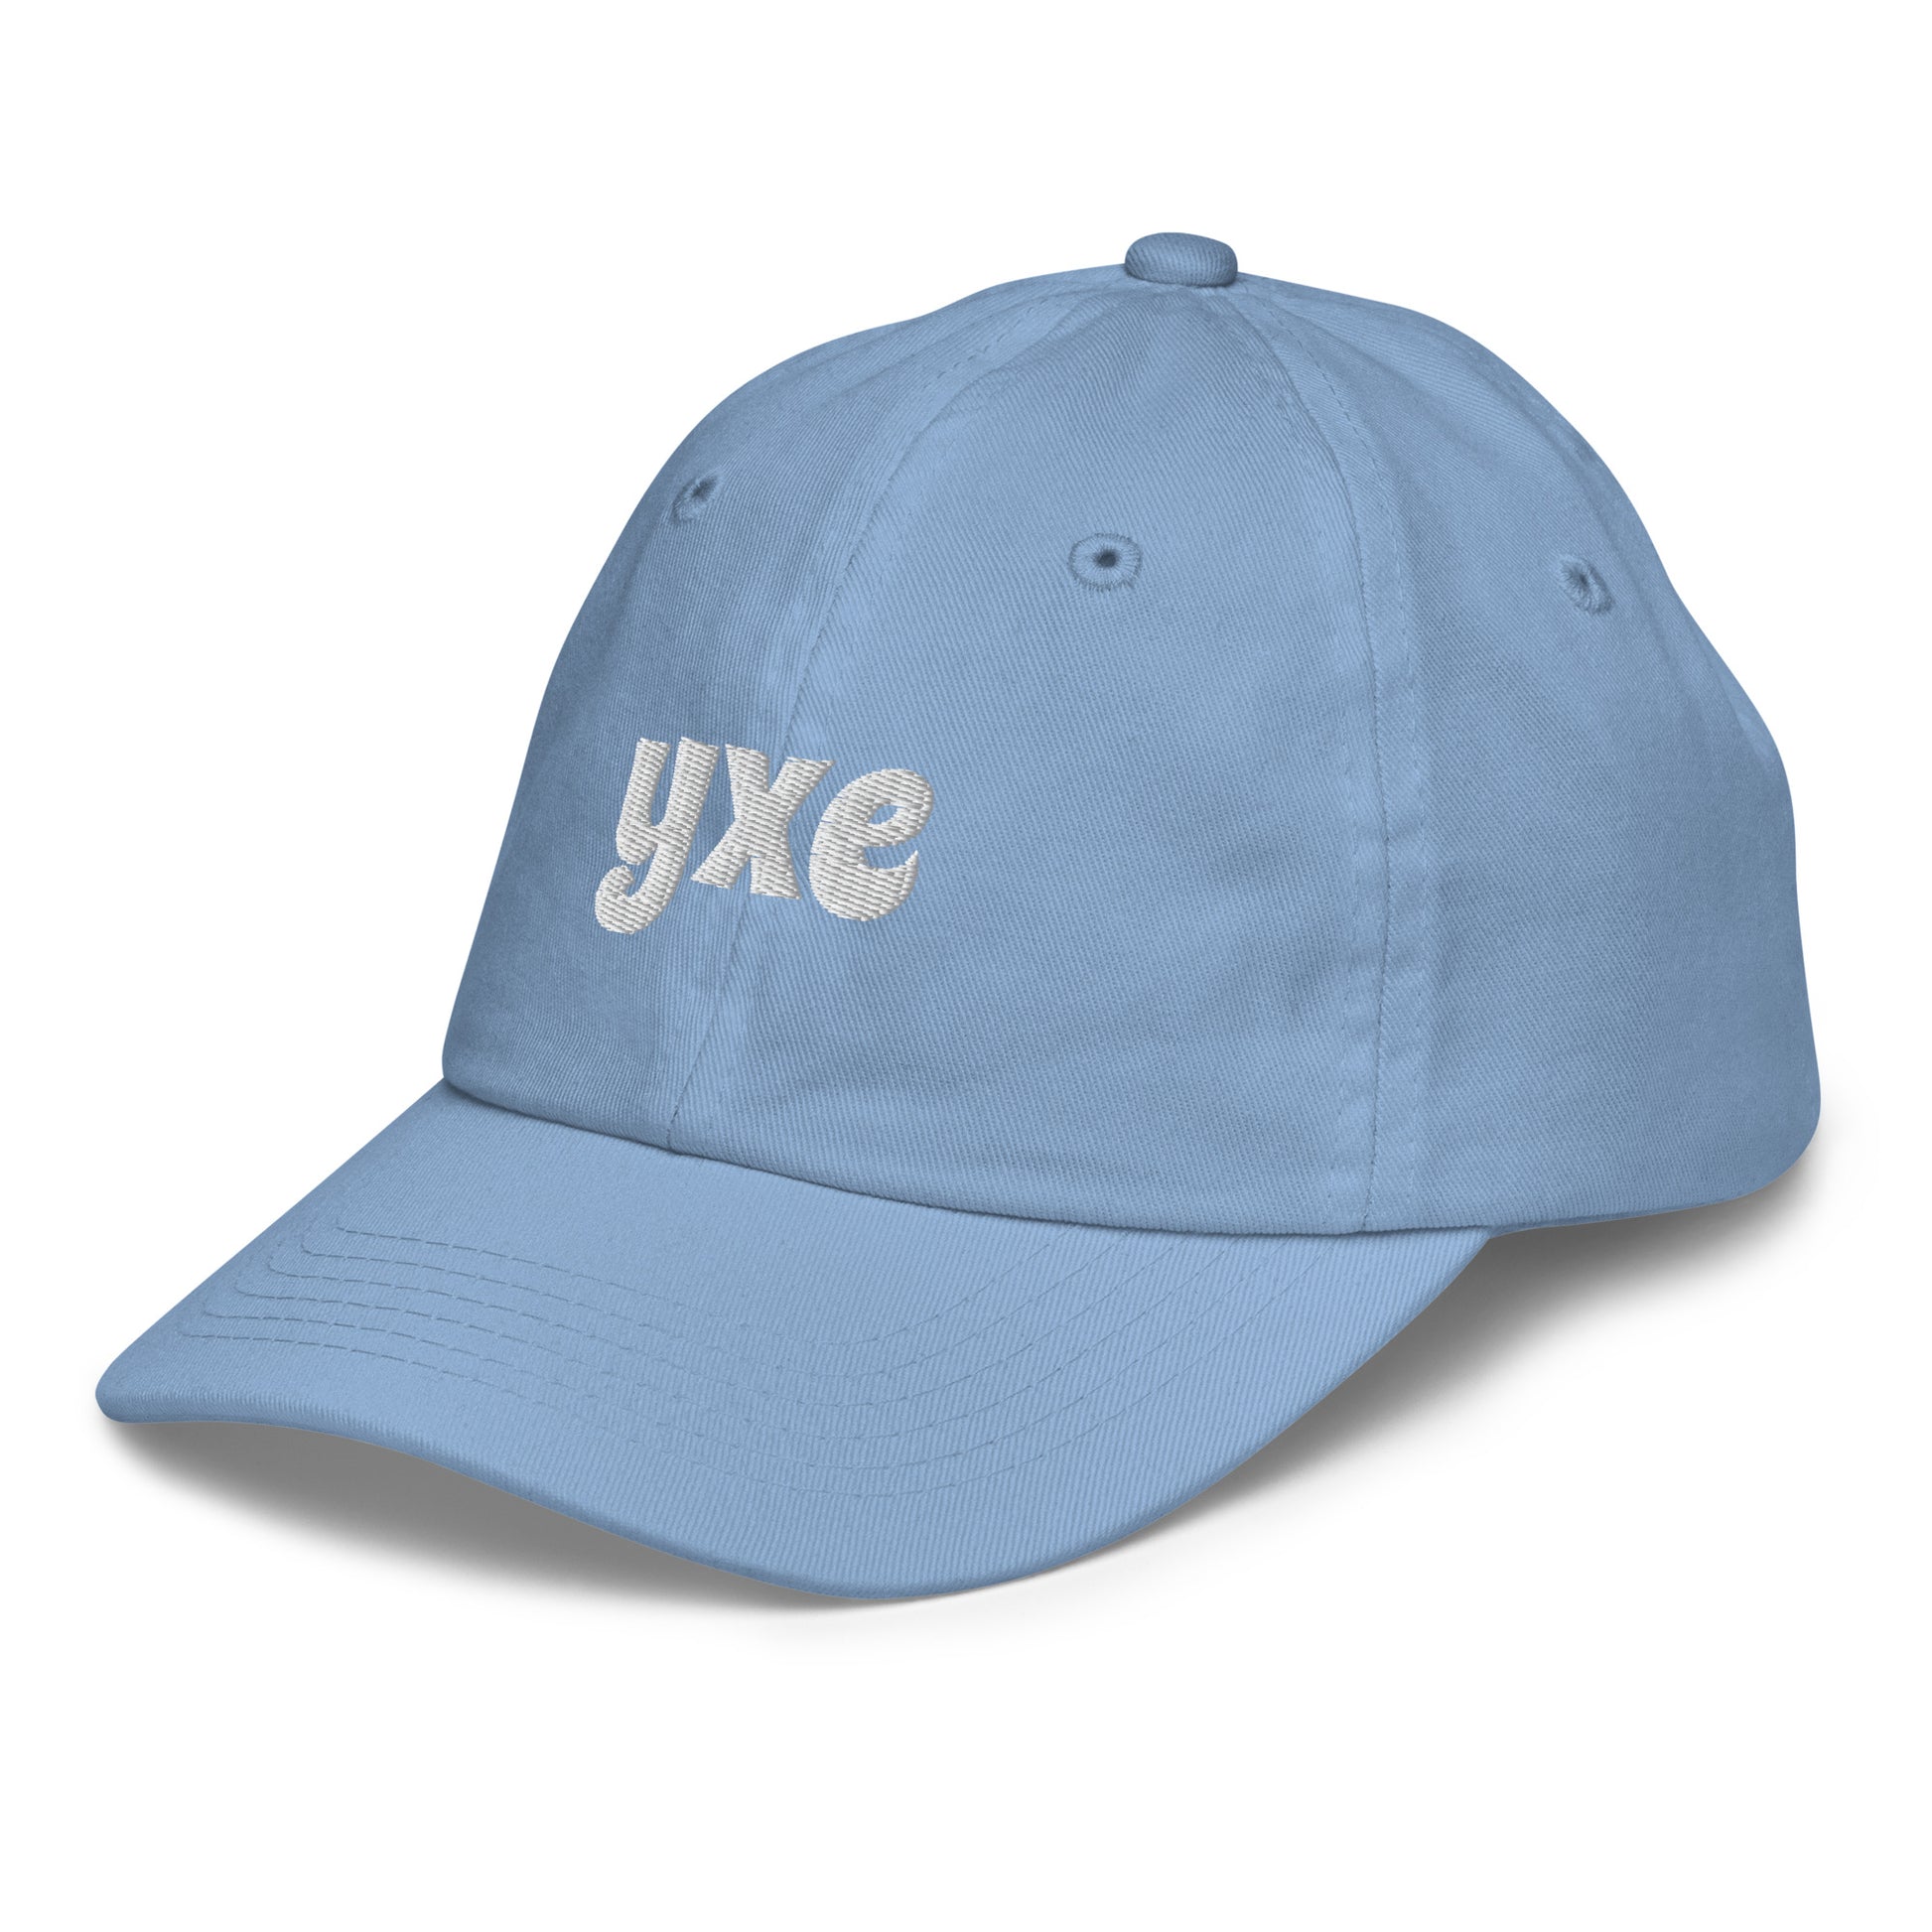 Groovy Kid's Baseball Cap - White • YXE Saskatoon • YHM Designs - Image 18